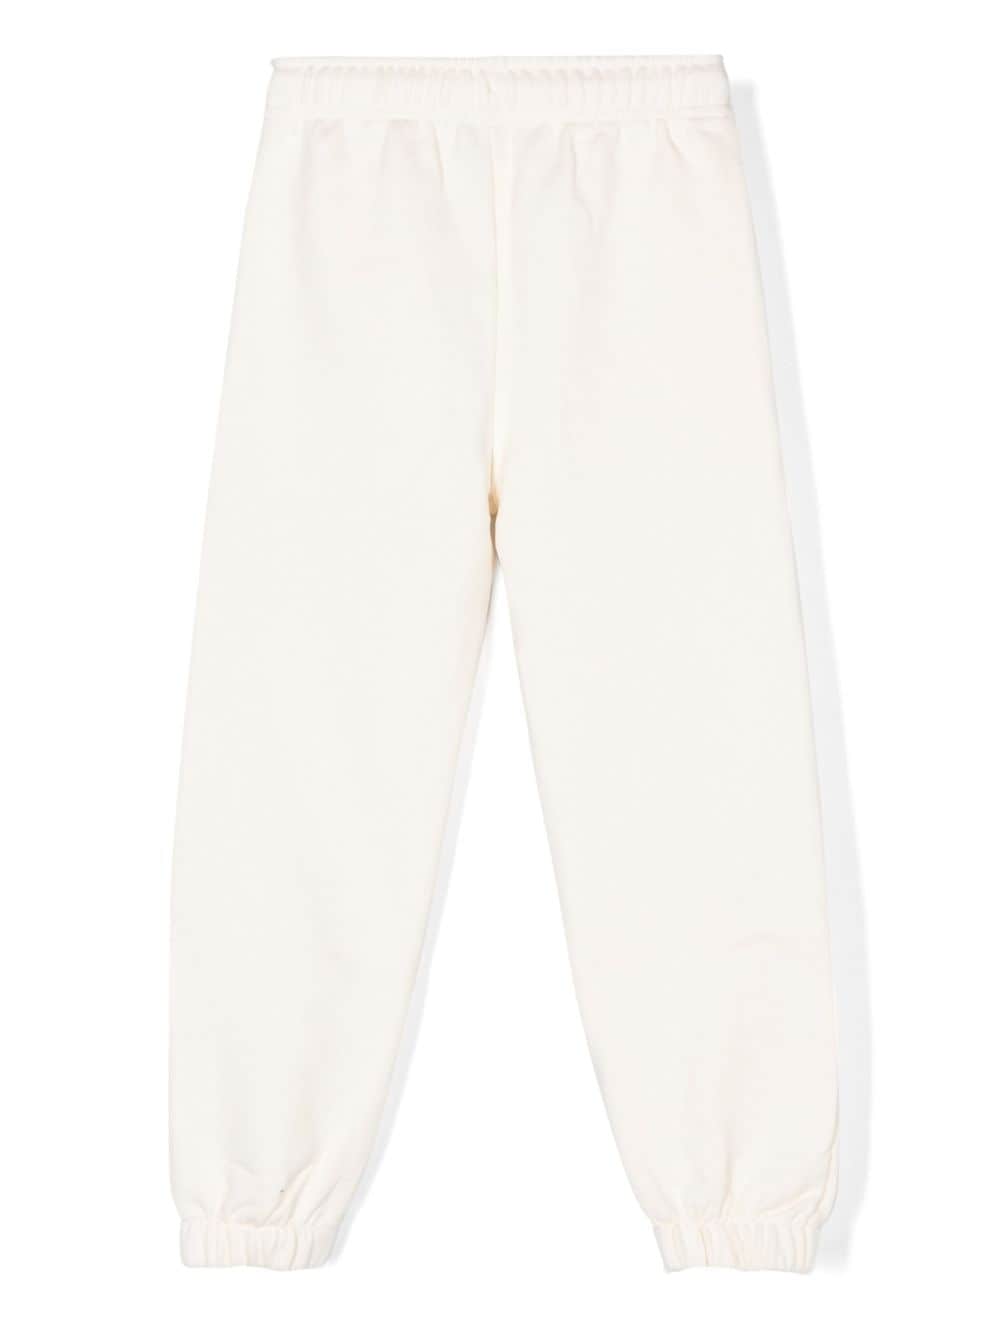 Pantalone per bambino in cotone bianco